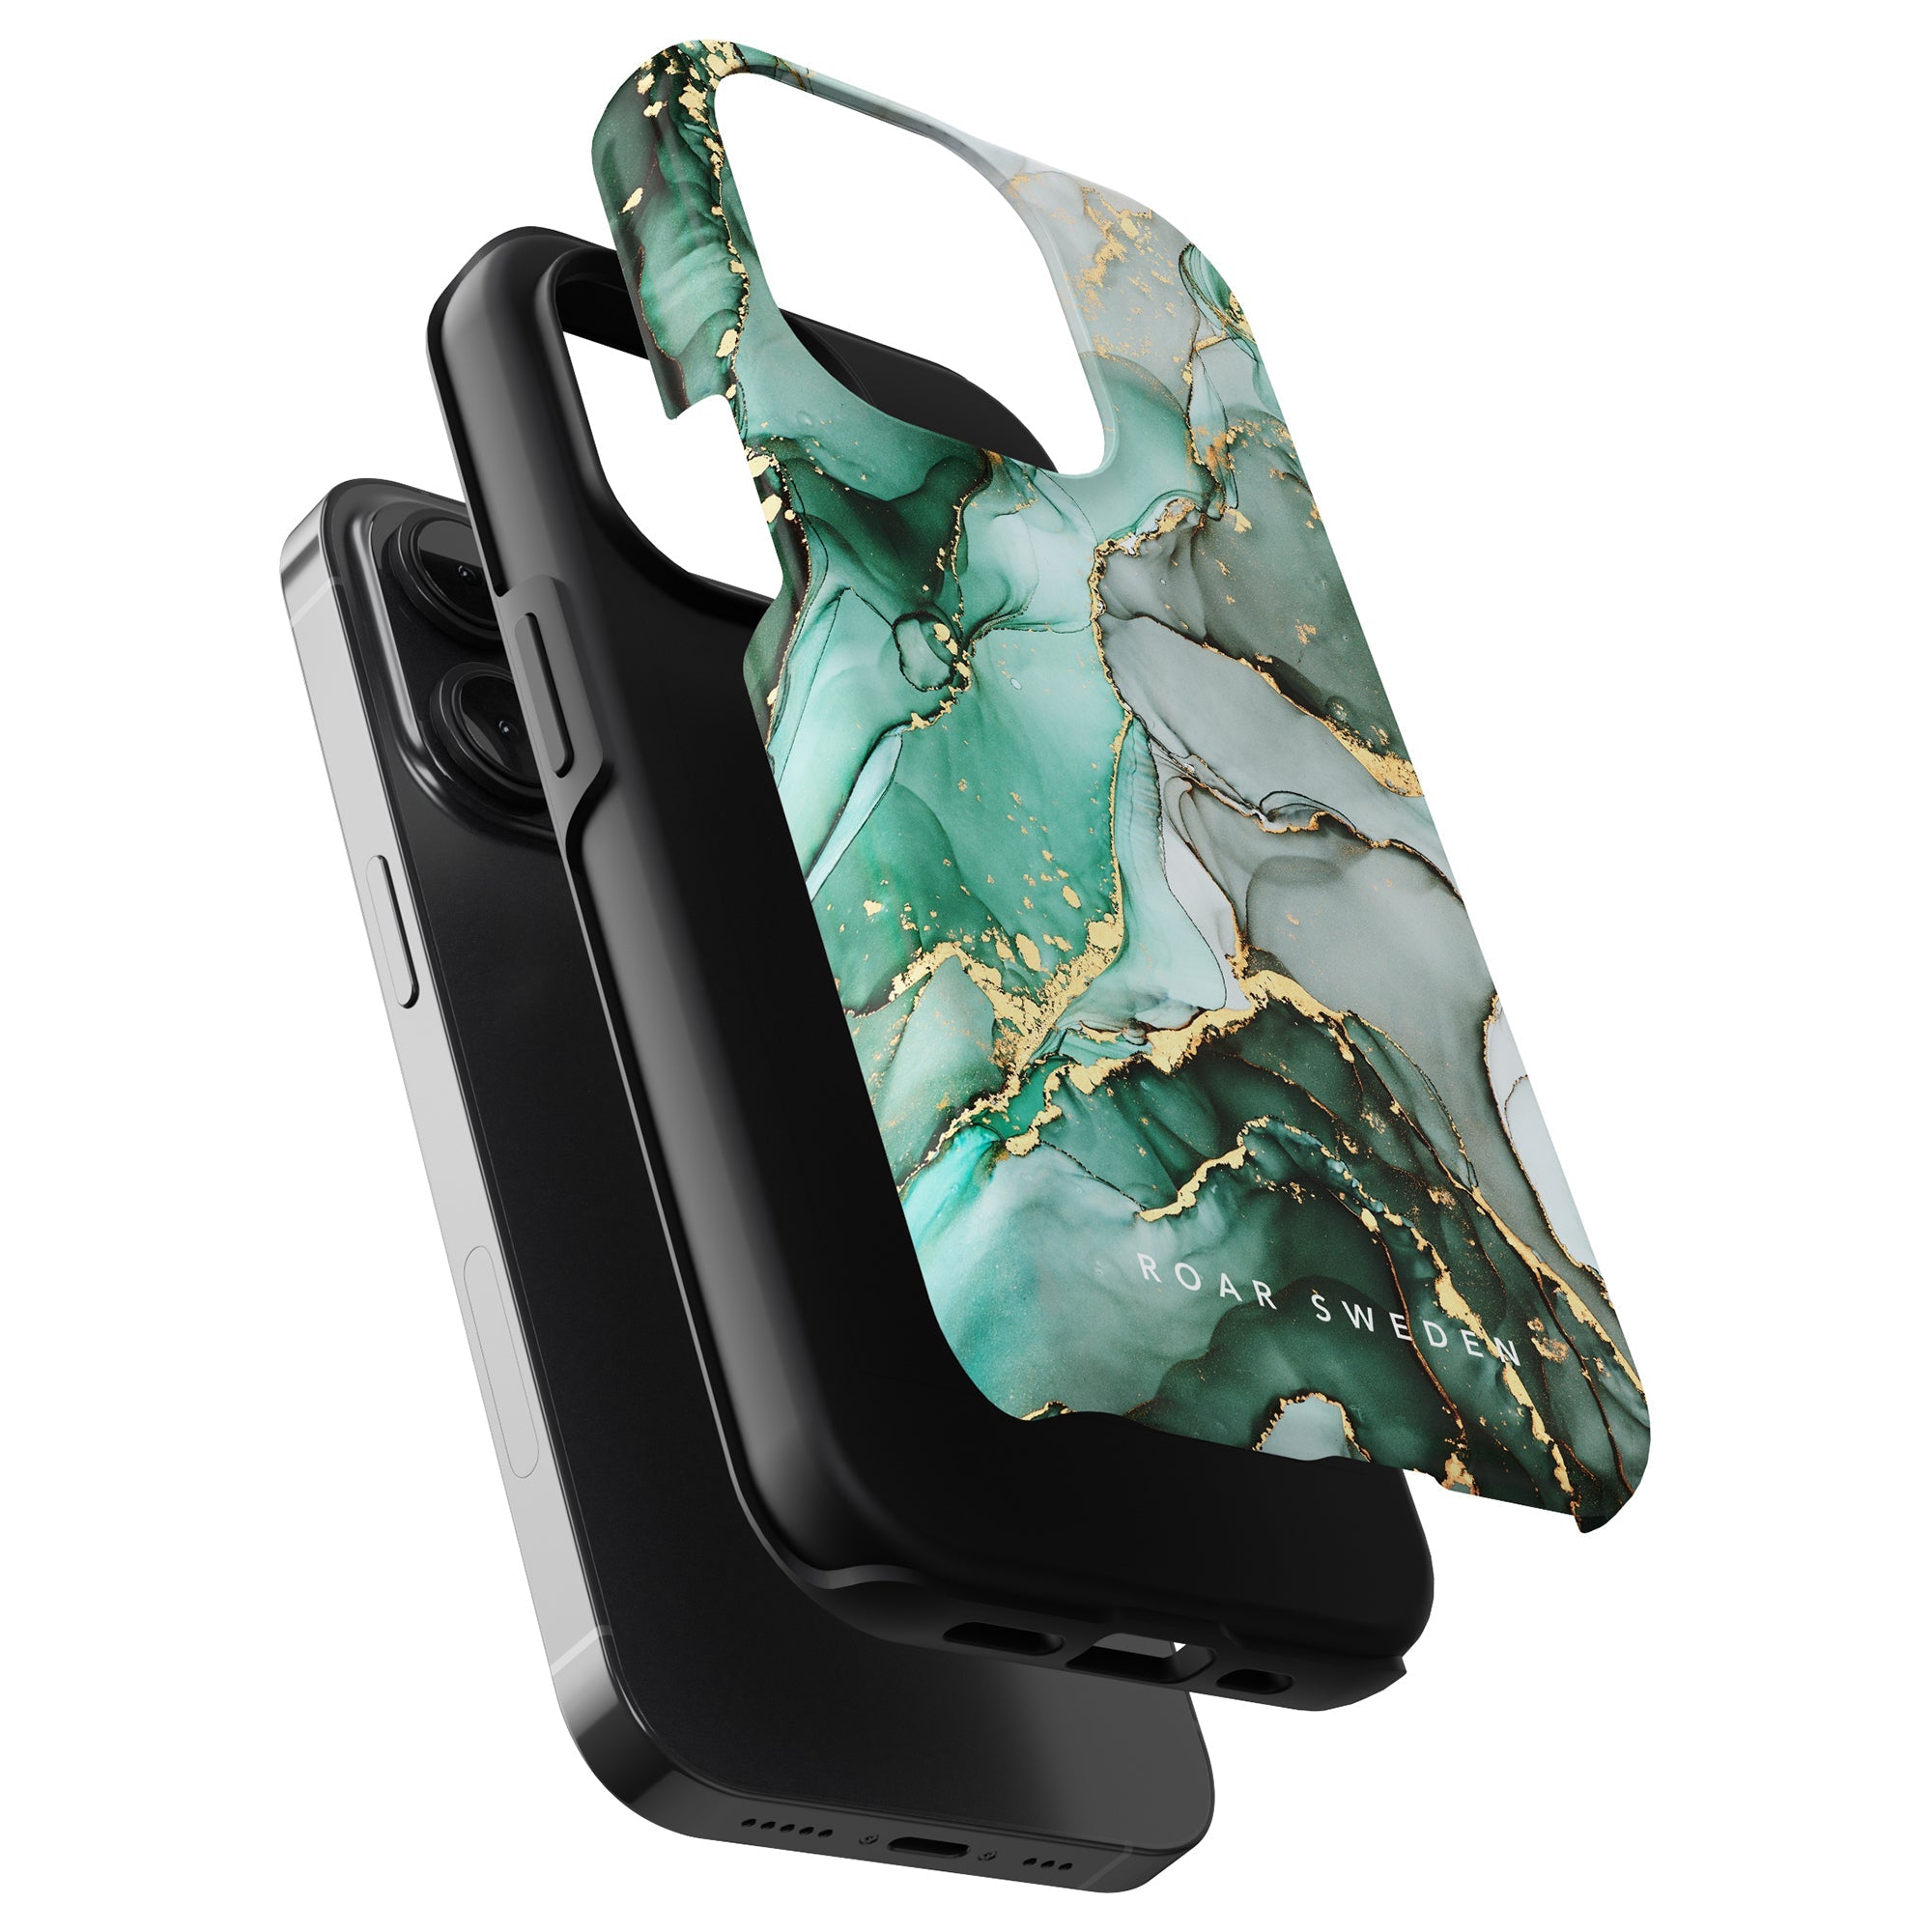 Ett tufft och hållbart Emerald - Tufft fodral för iPhone 11 Pro, som ger utmärkt skydd och lätt att lyfta.